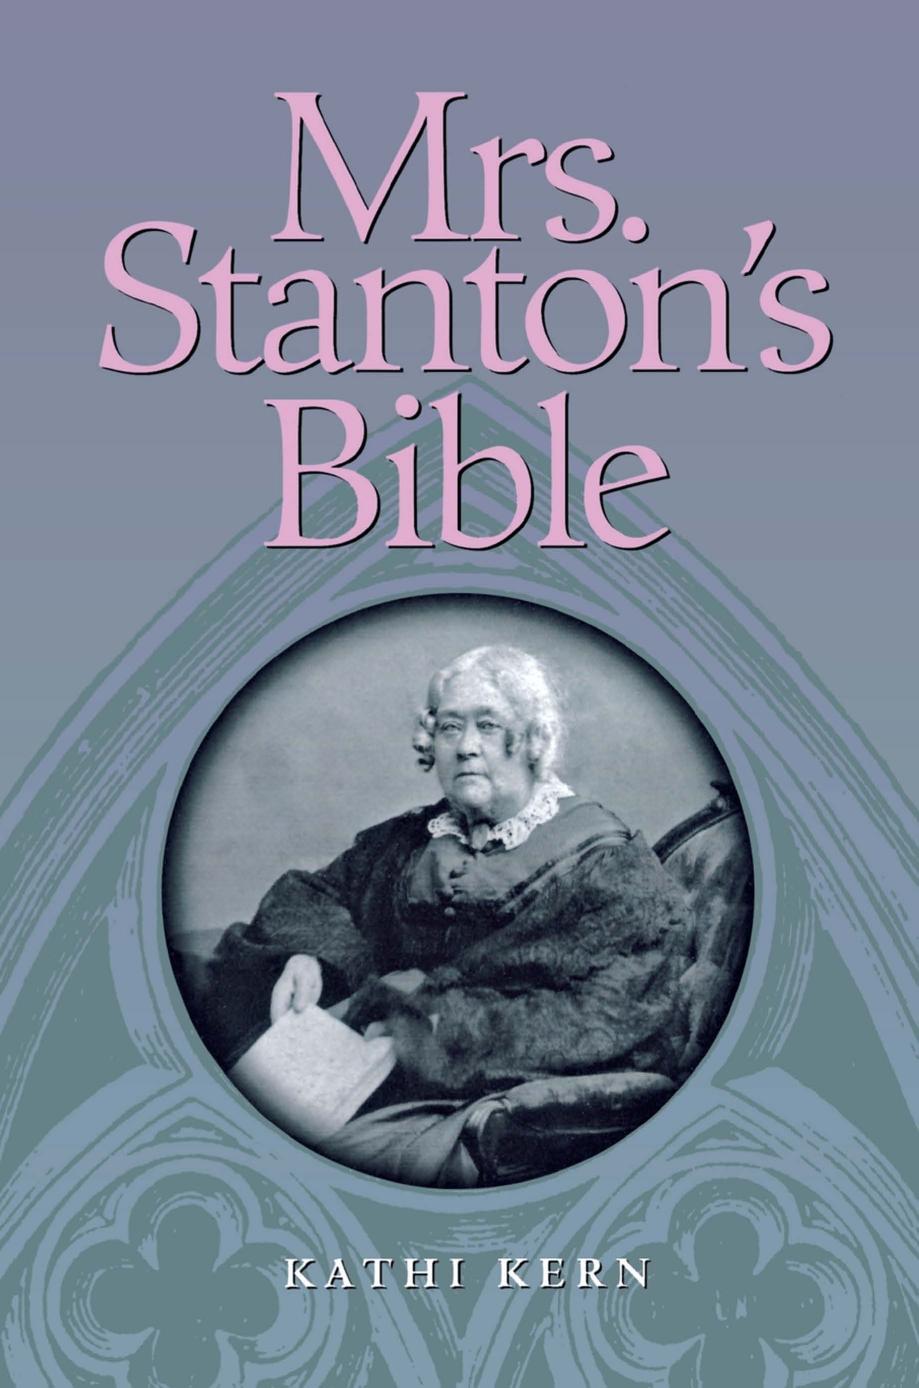 Mrs. Stanton's Bible by Kathi Kern